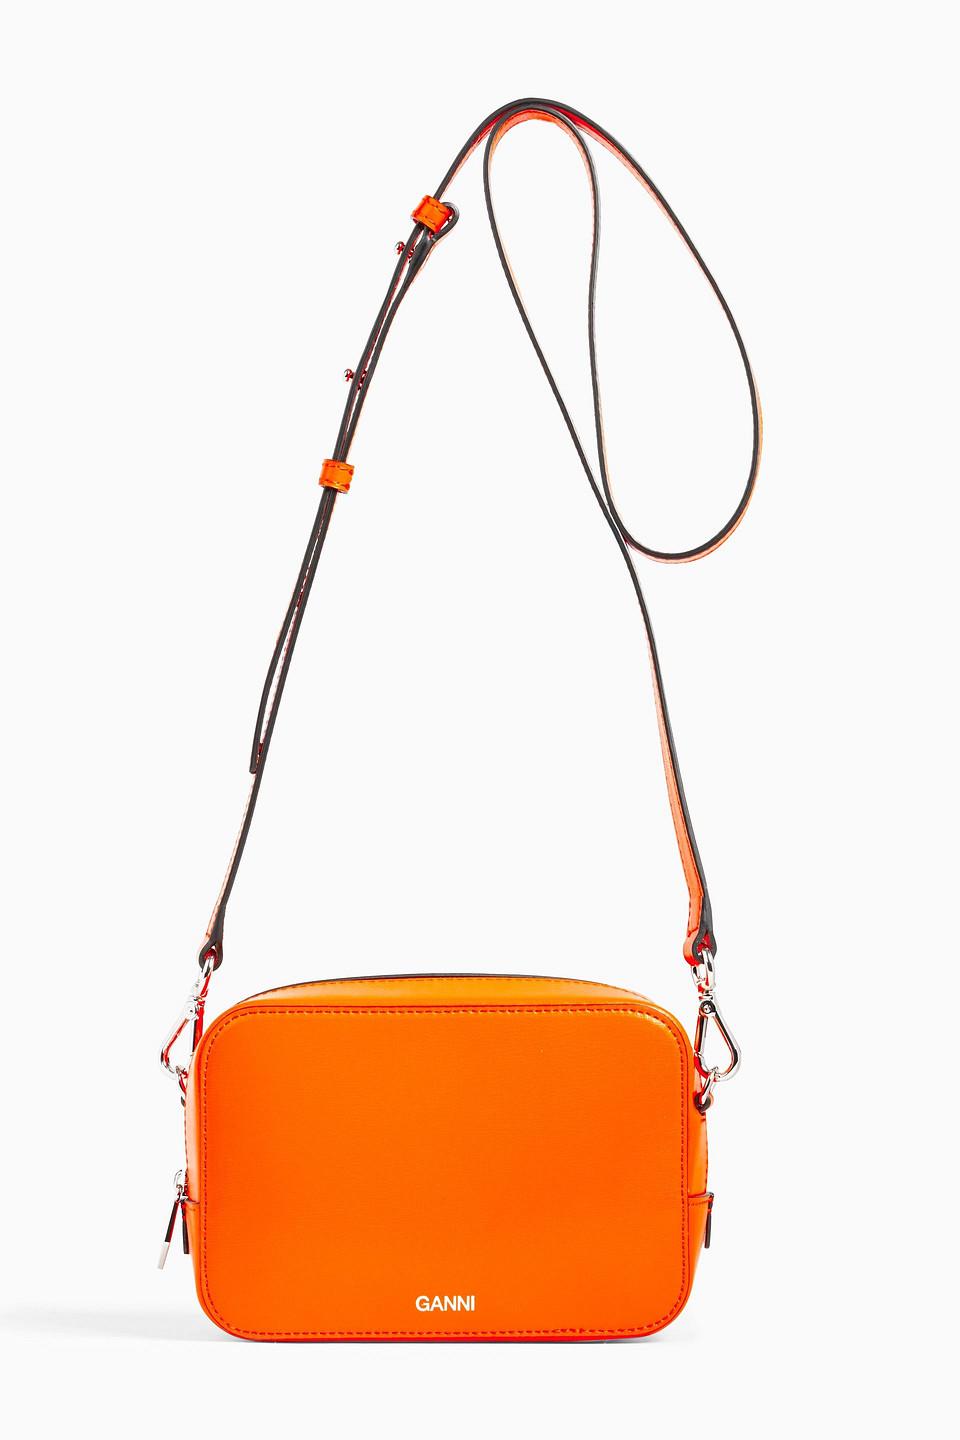 Ganni Textured-leather Shoulder Bag in Orange | Lyst